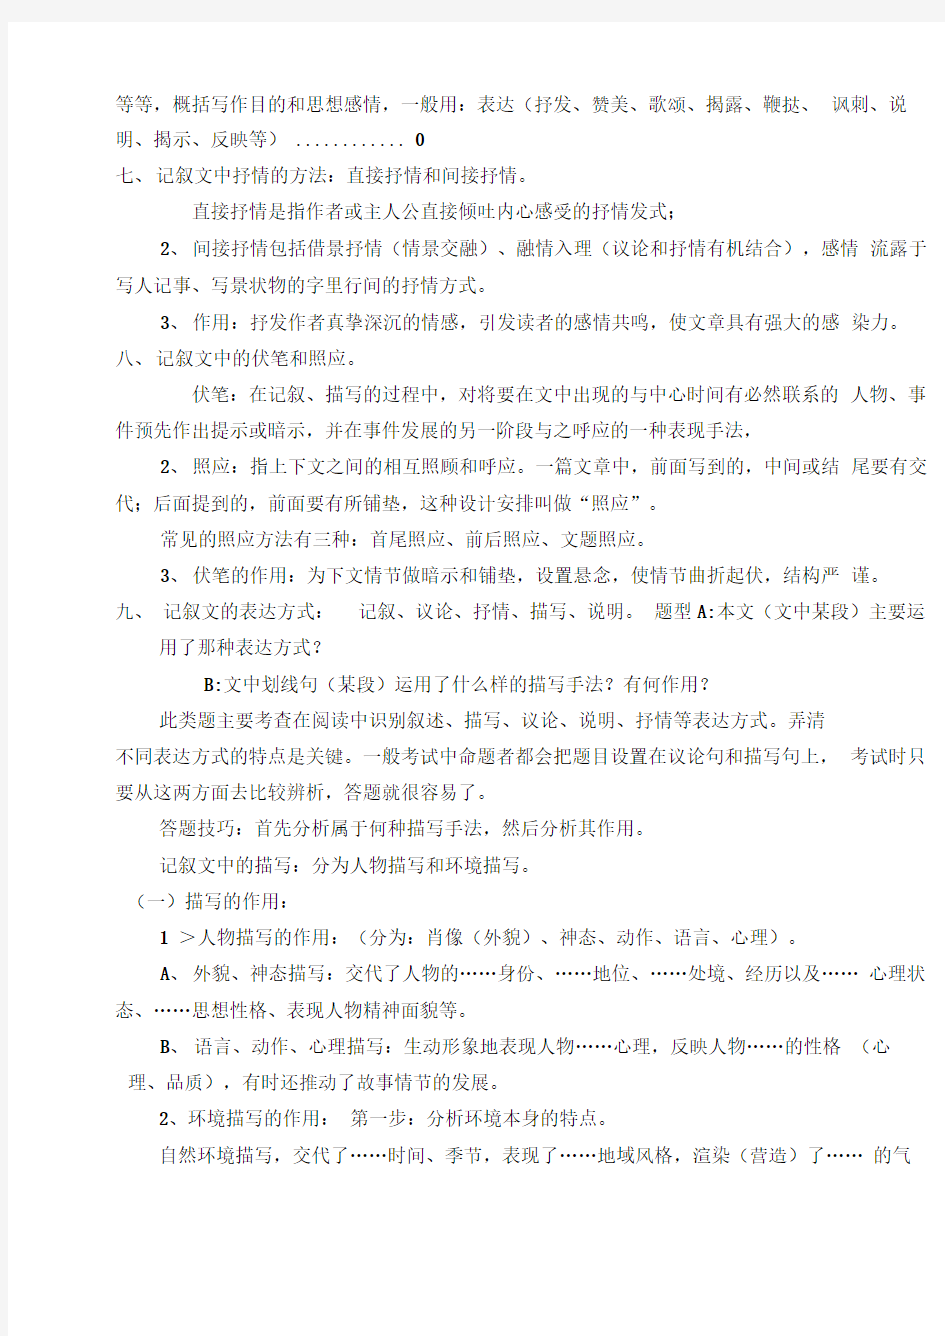 初中语文阅读答题技巧模板